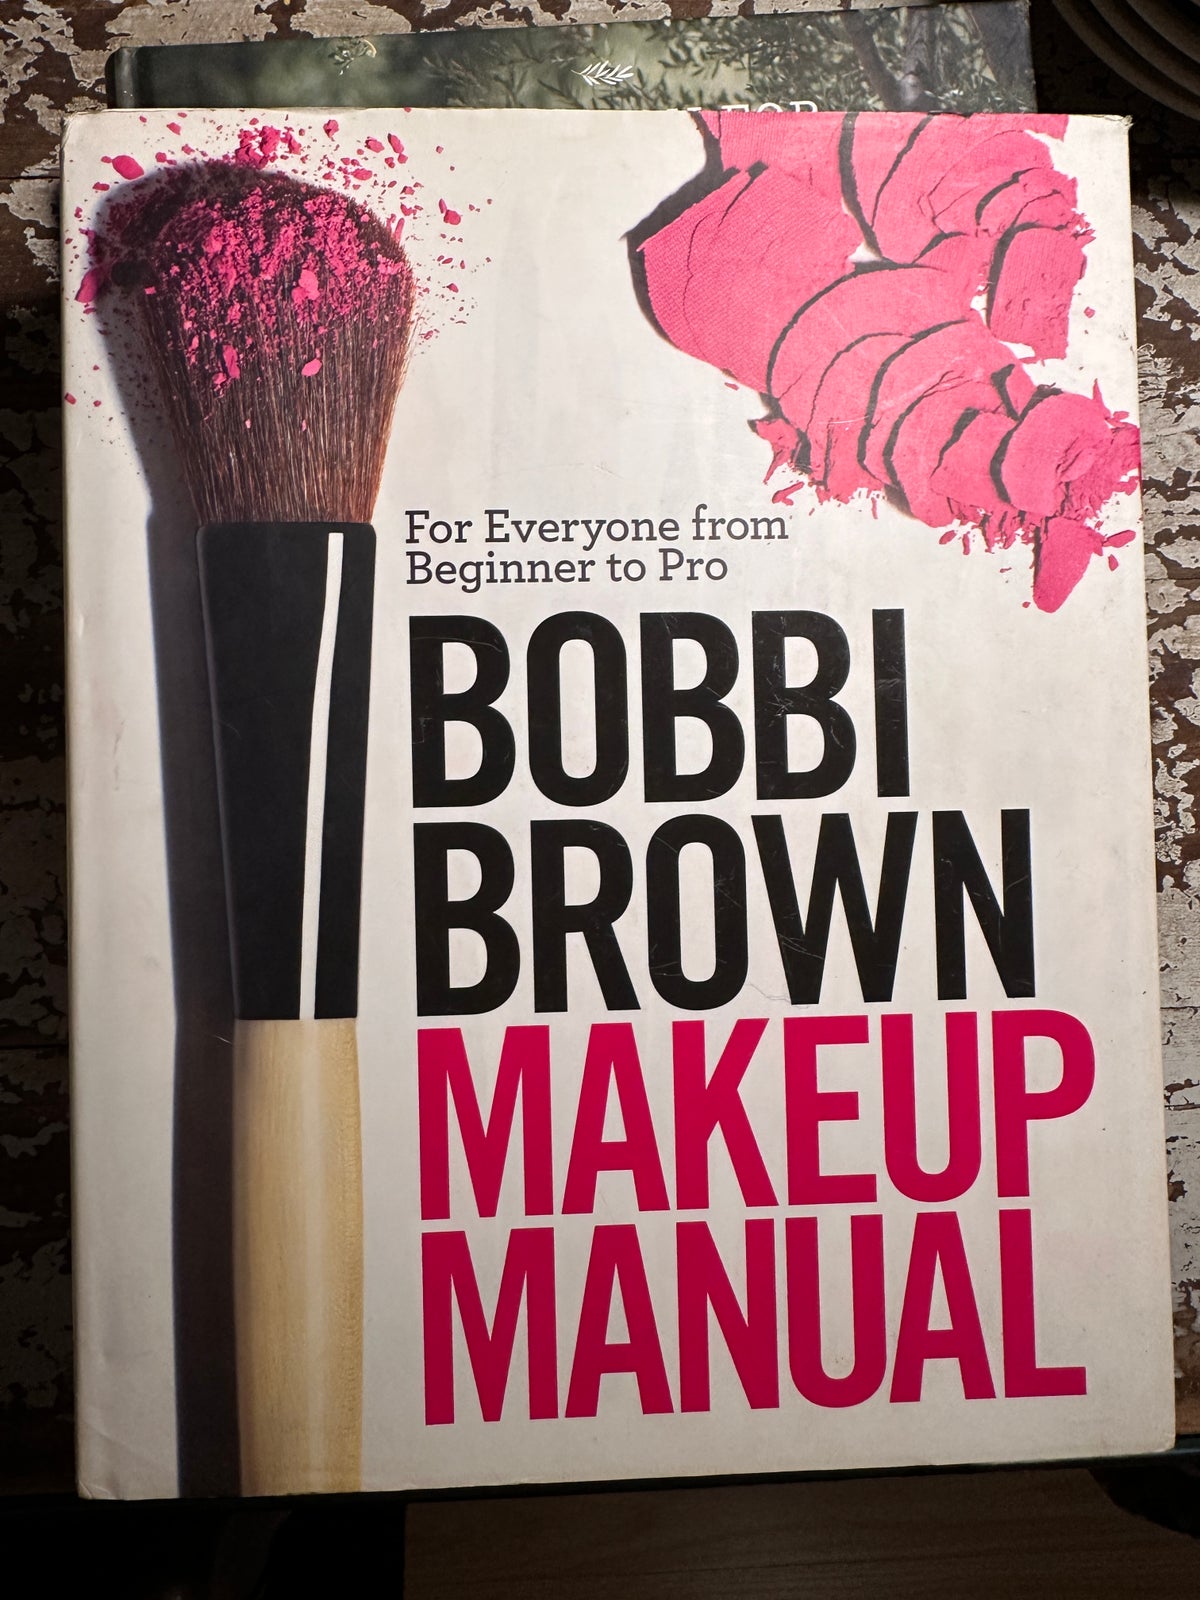 Bobbi Brown Makeup Manual For